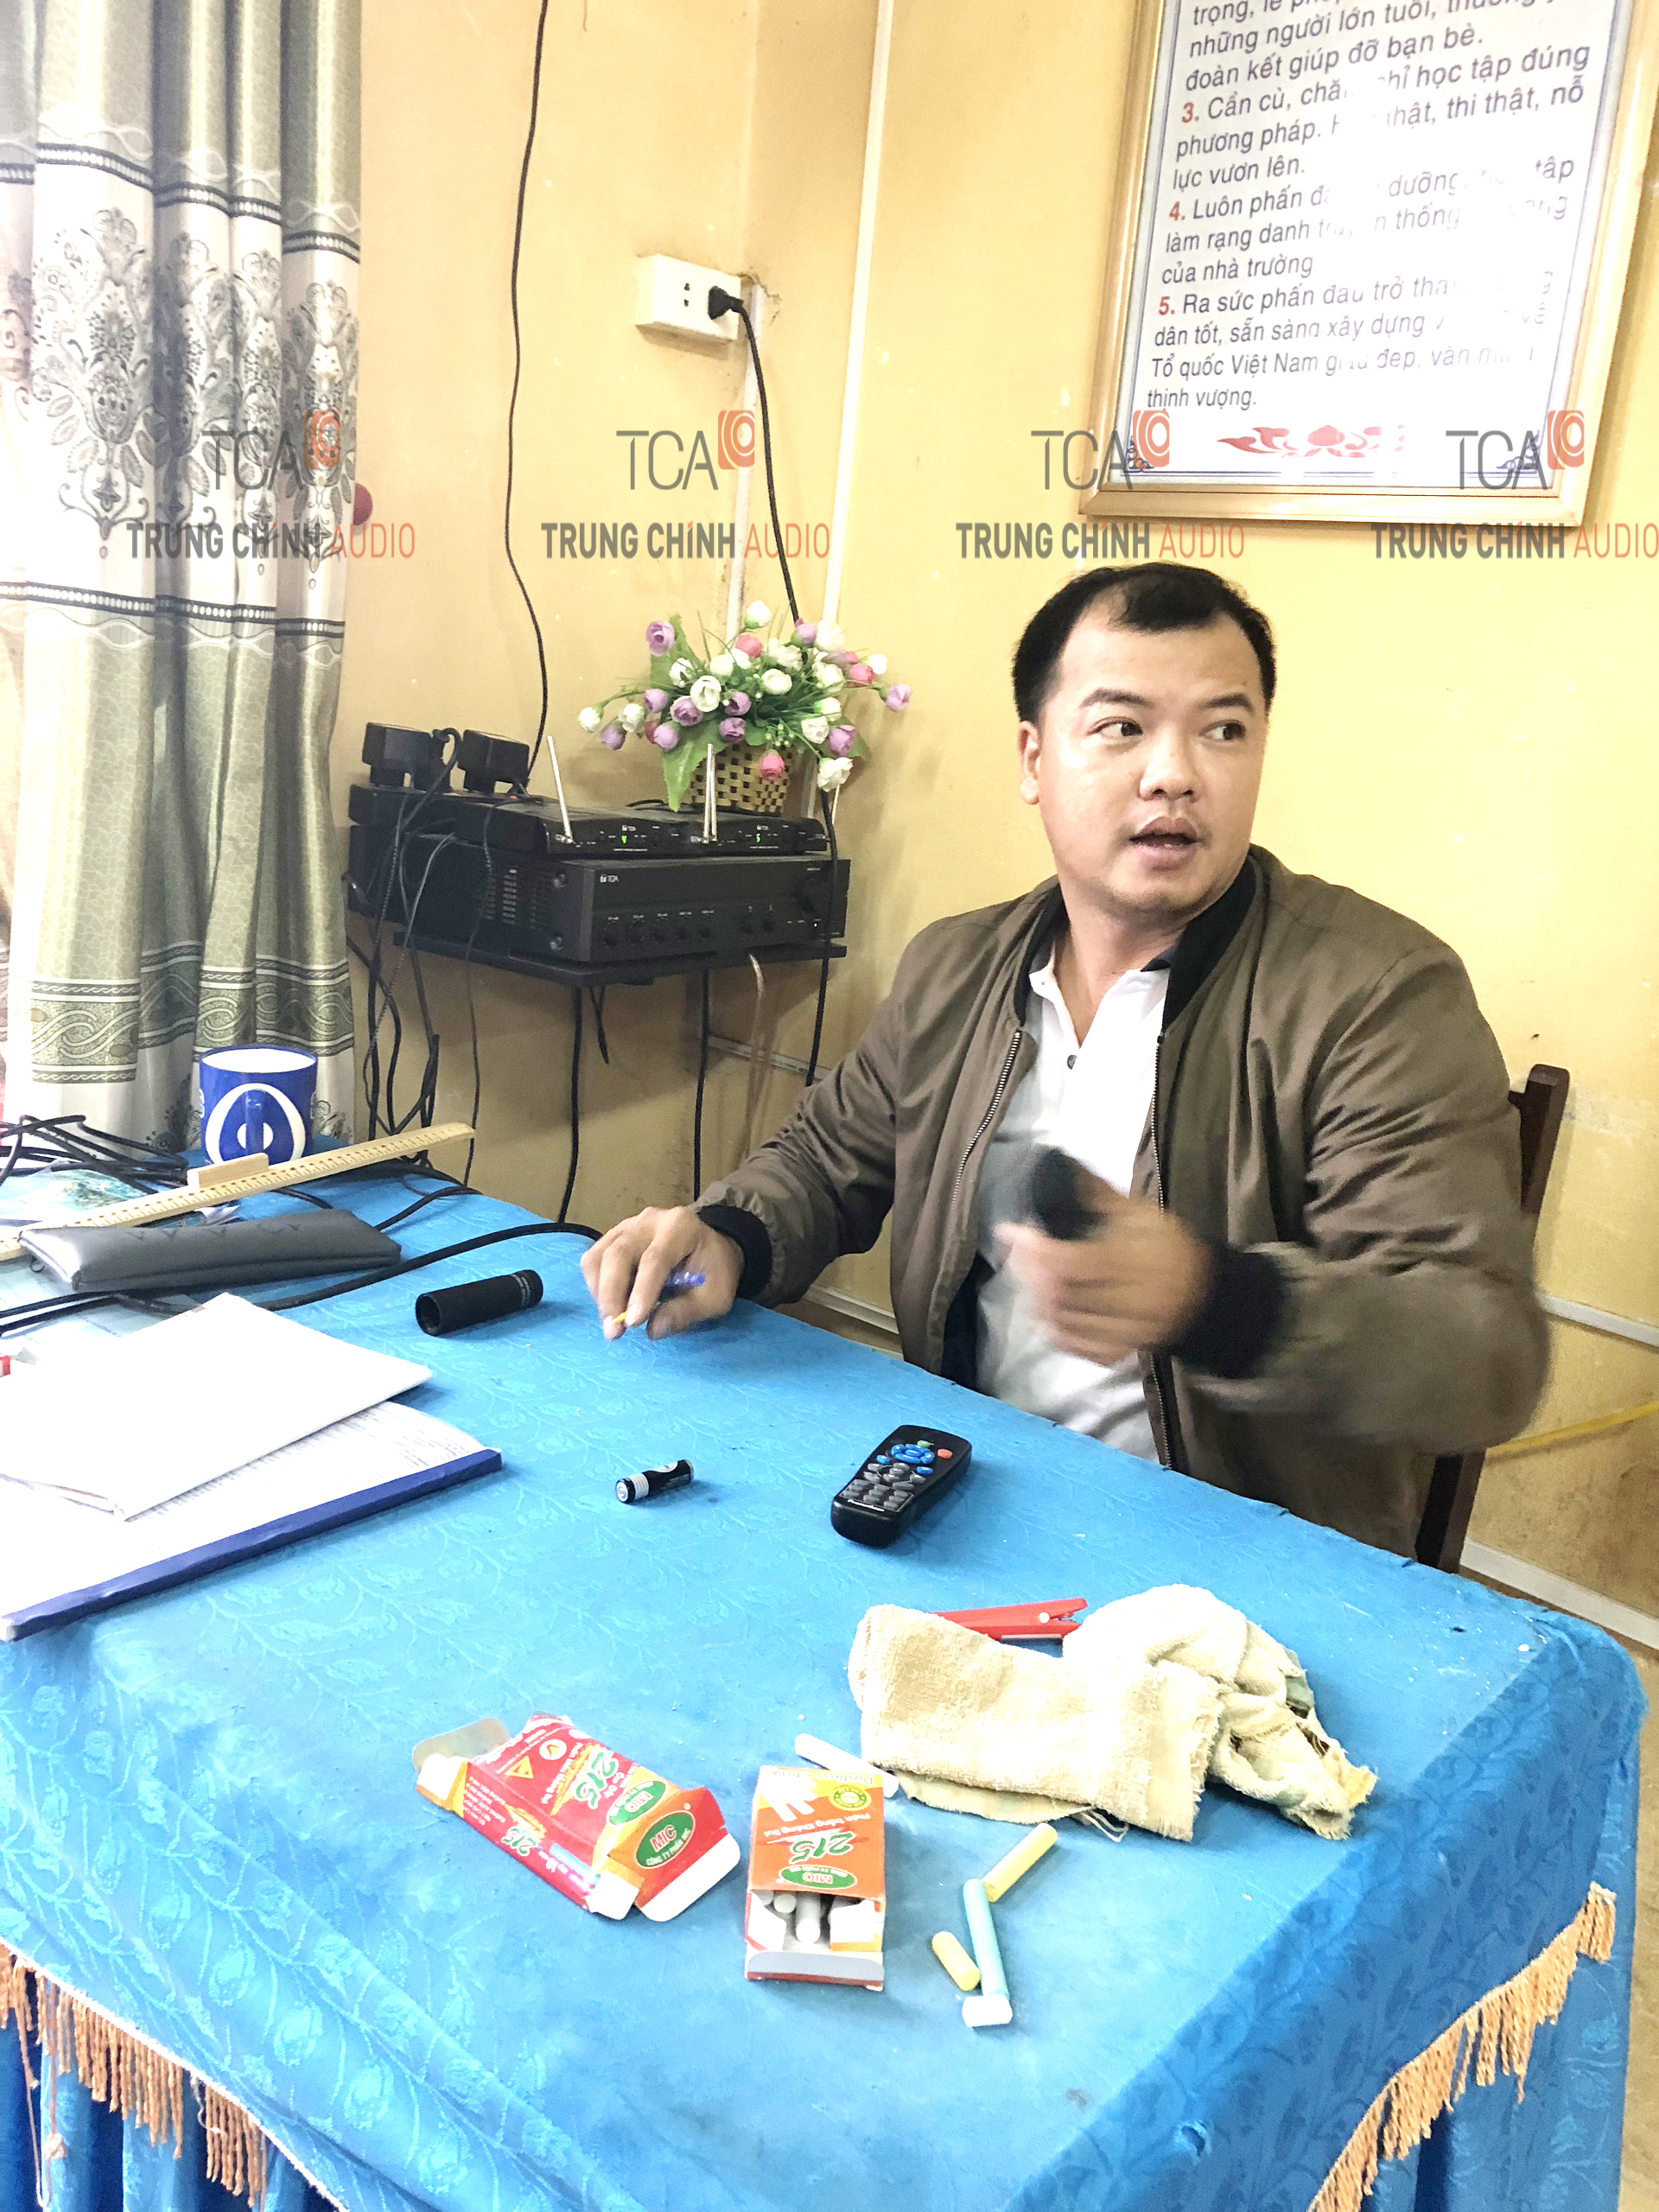 TCA cùng dự án lắp đặt âm thanh cho THPT Thuận Thành số 1 tỉnh Bắc Ninh